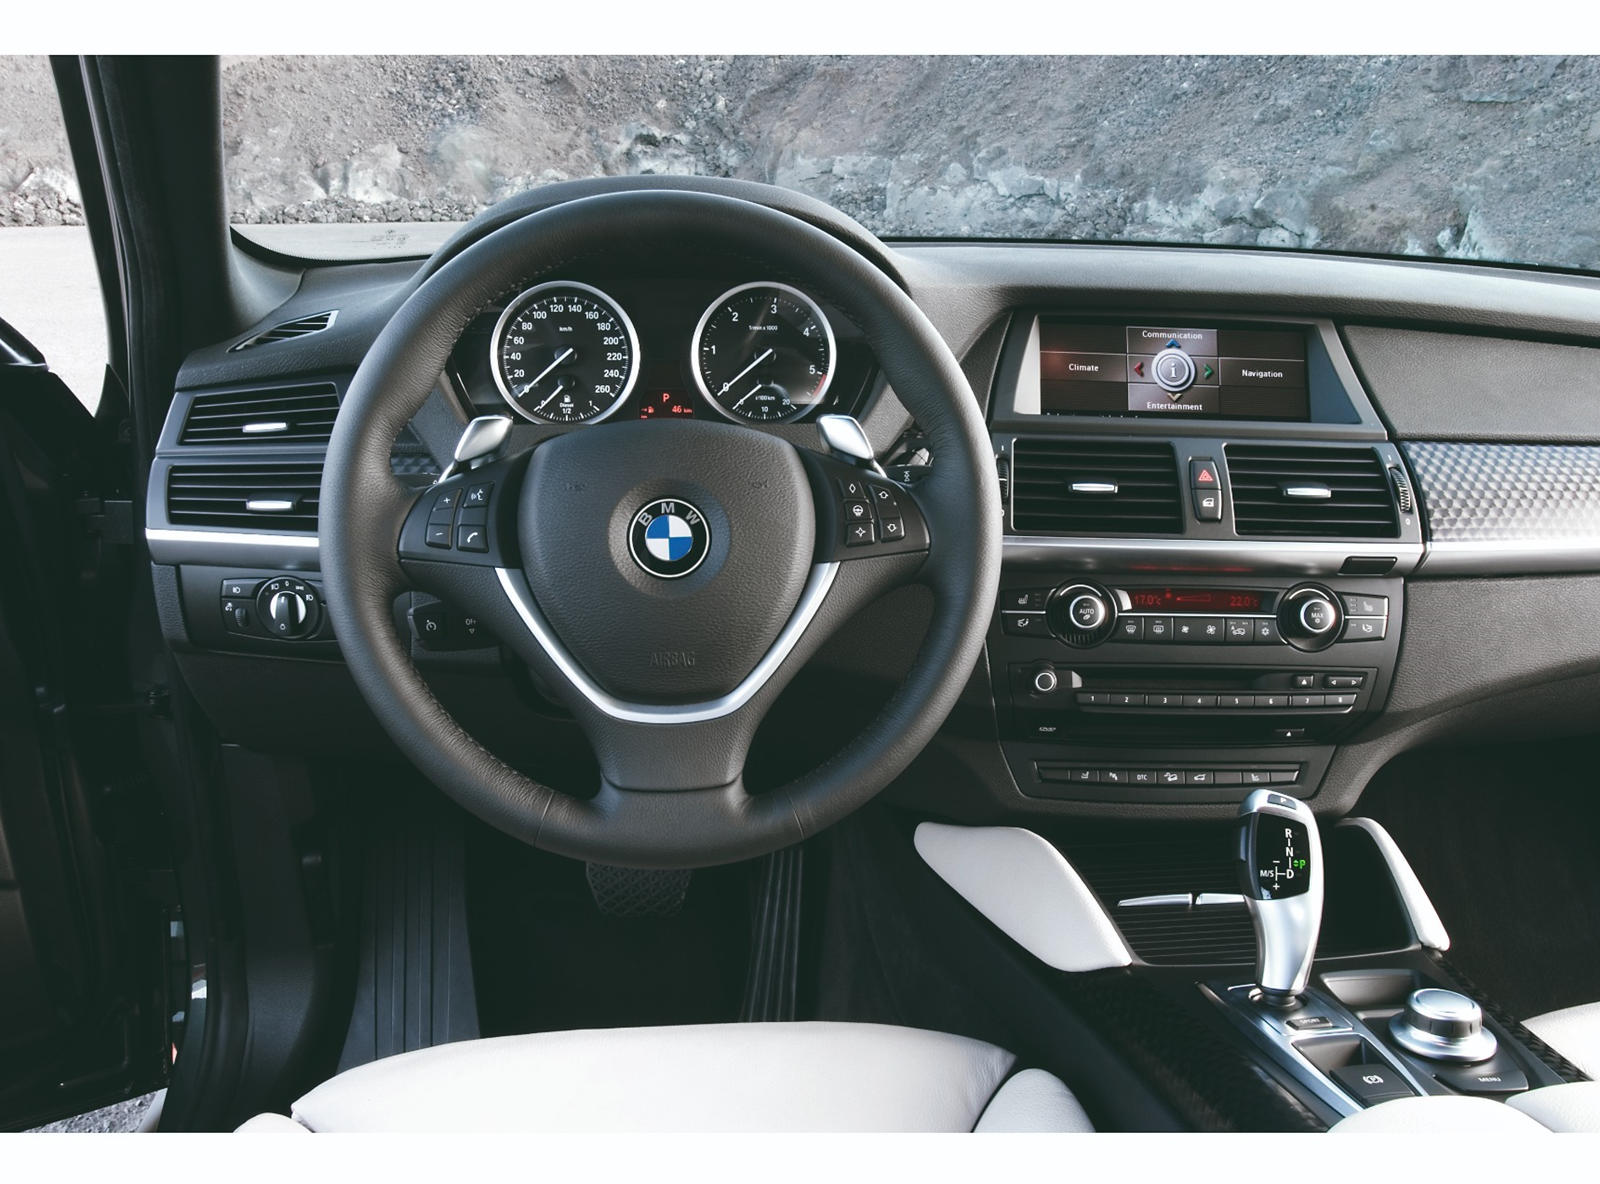 2008 BMW X6 Interior Photos | CarBuzz